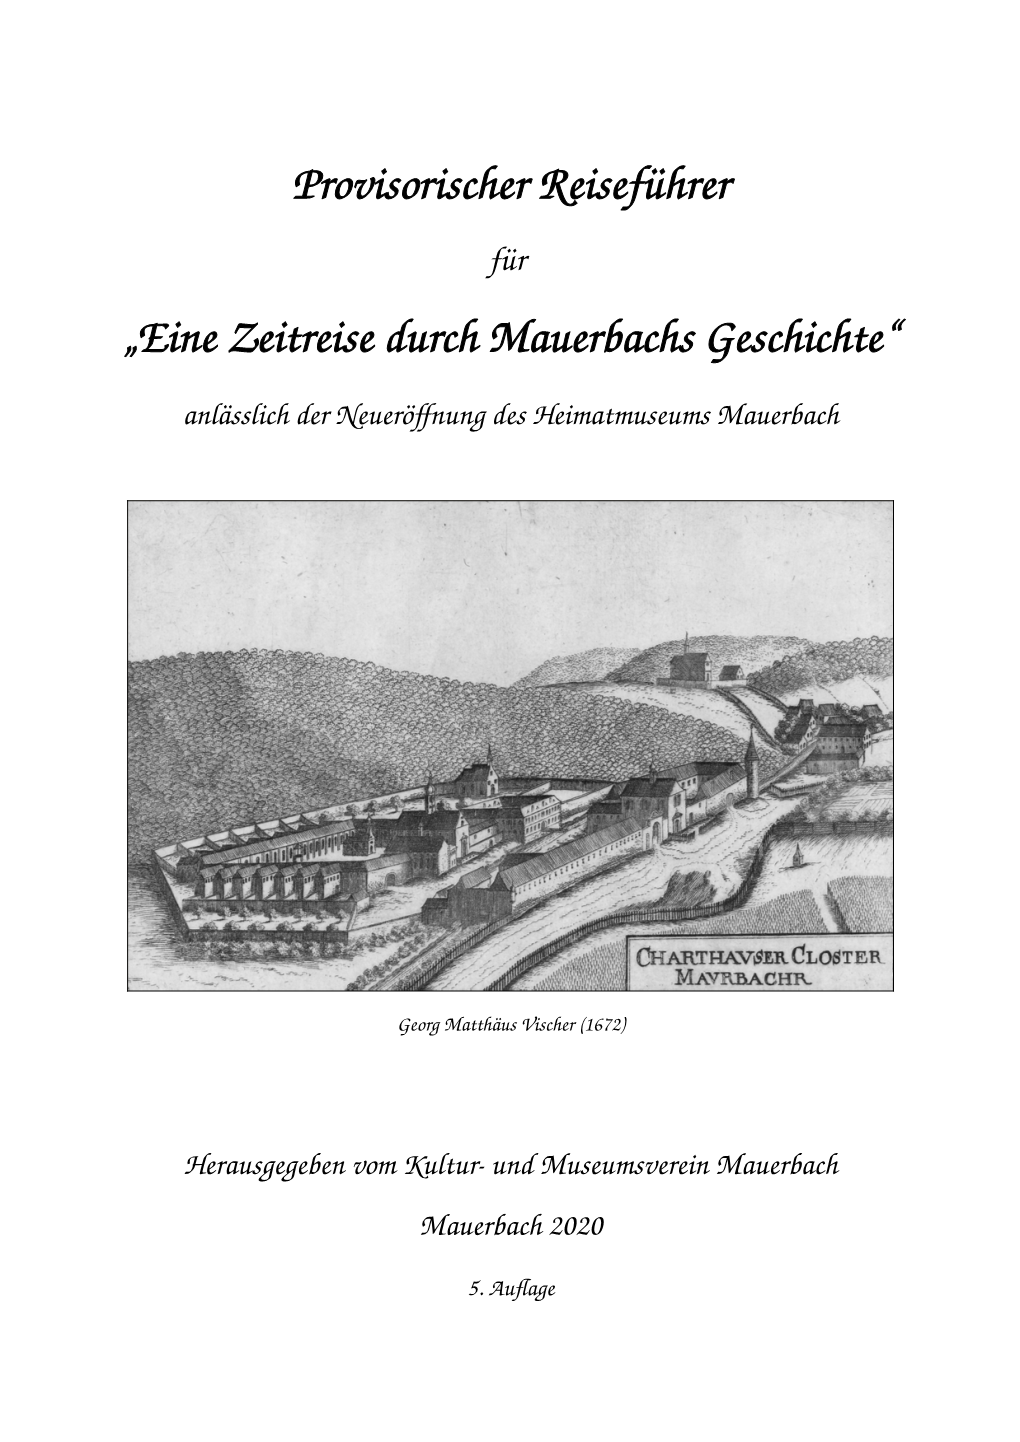 Eine Zeitreise Durch Mauerbachs Geschichte“